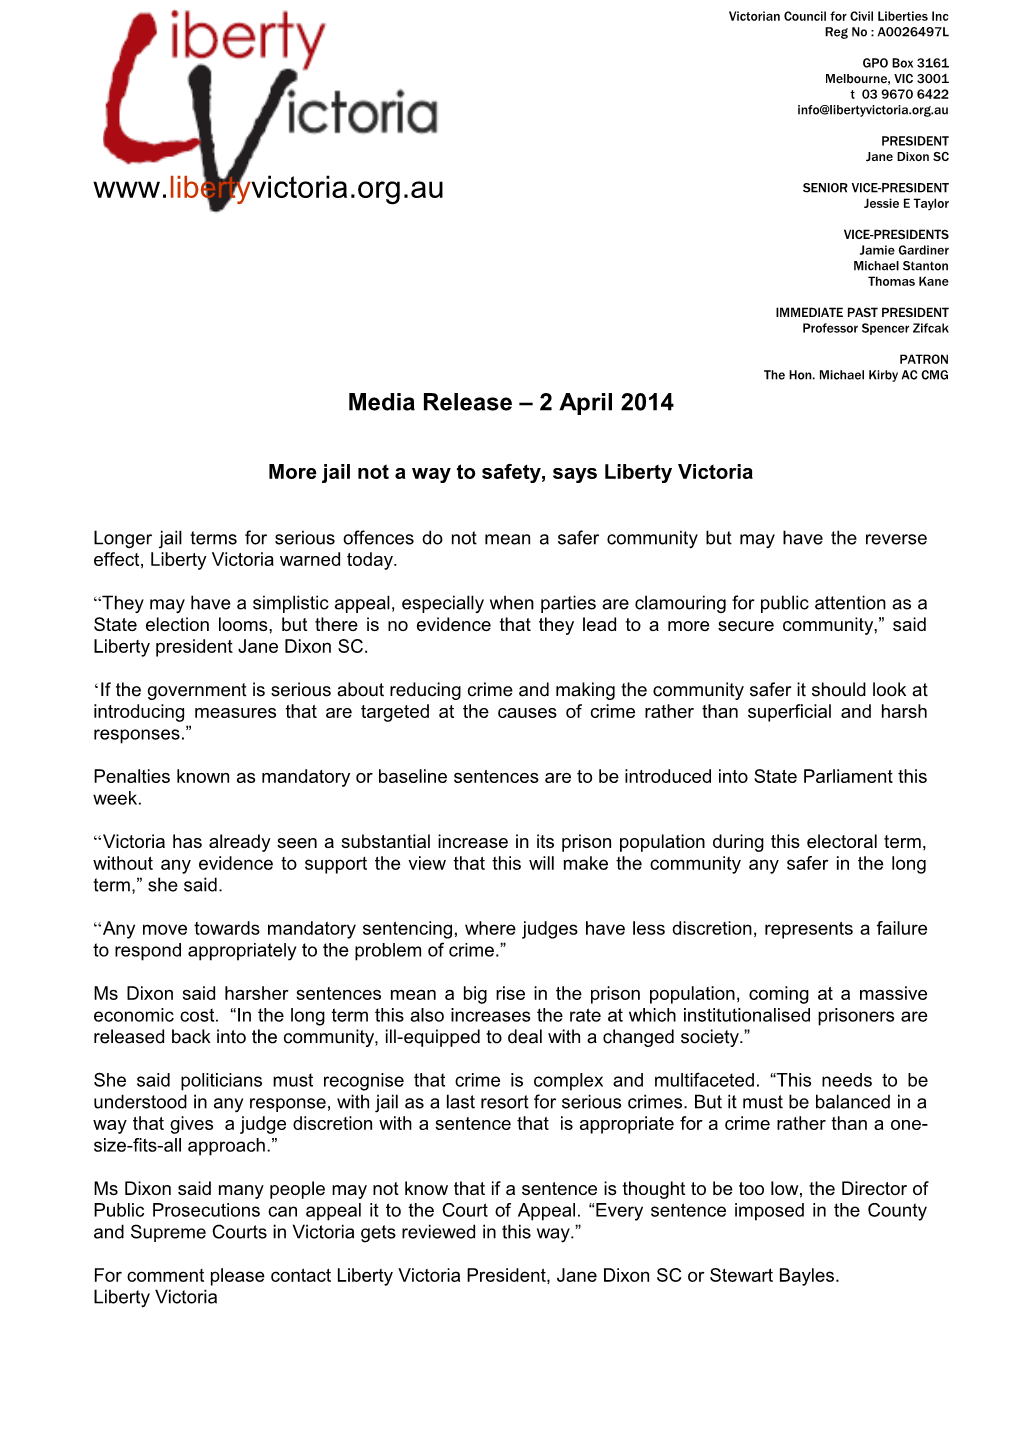 Media Release 2 April 2014